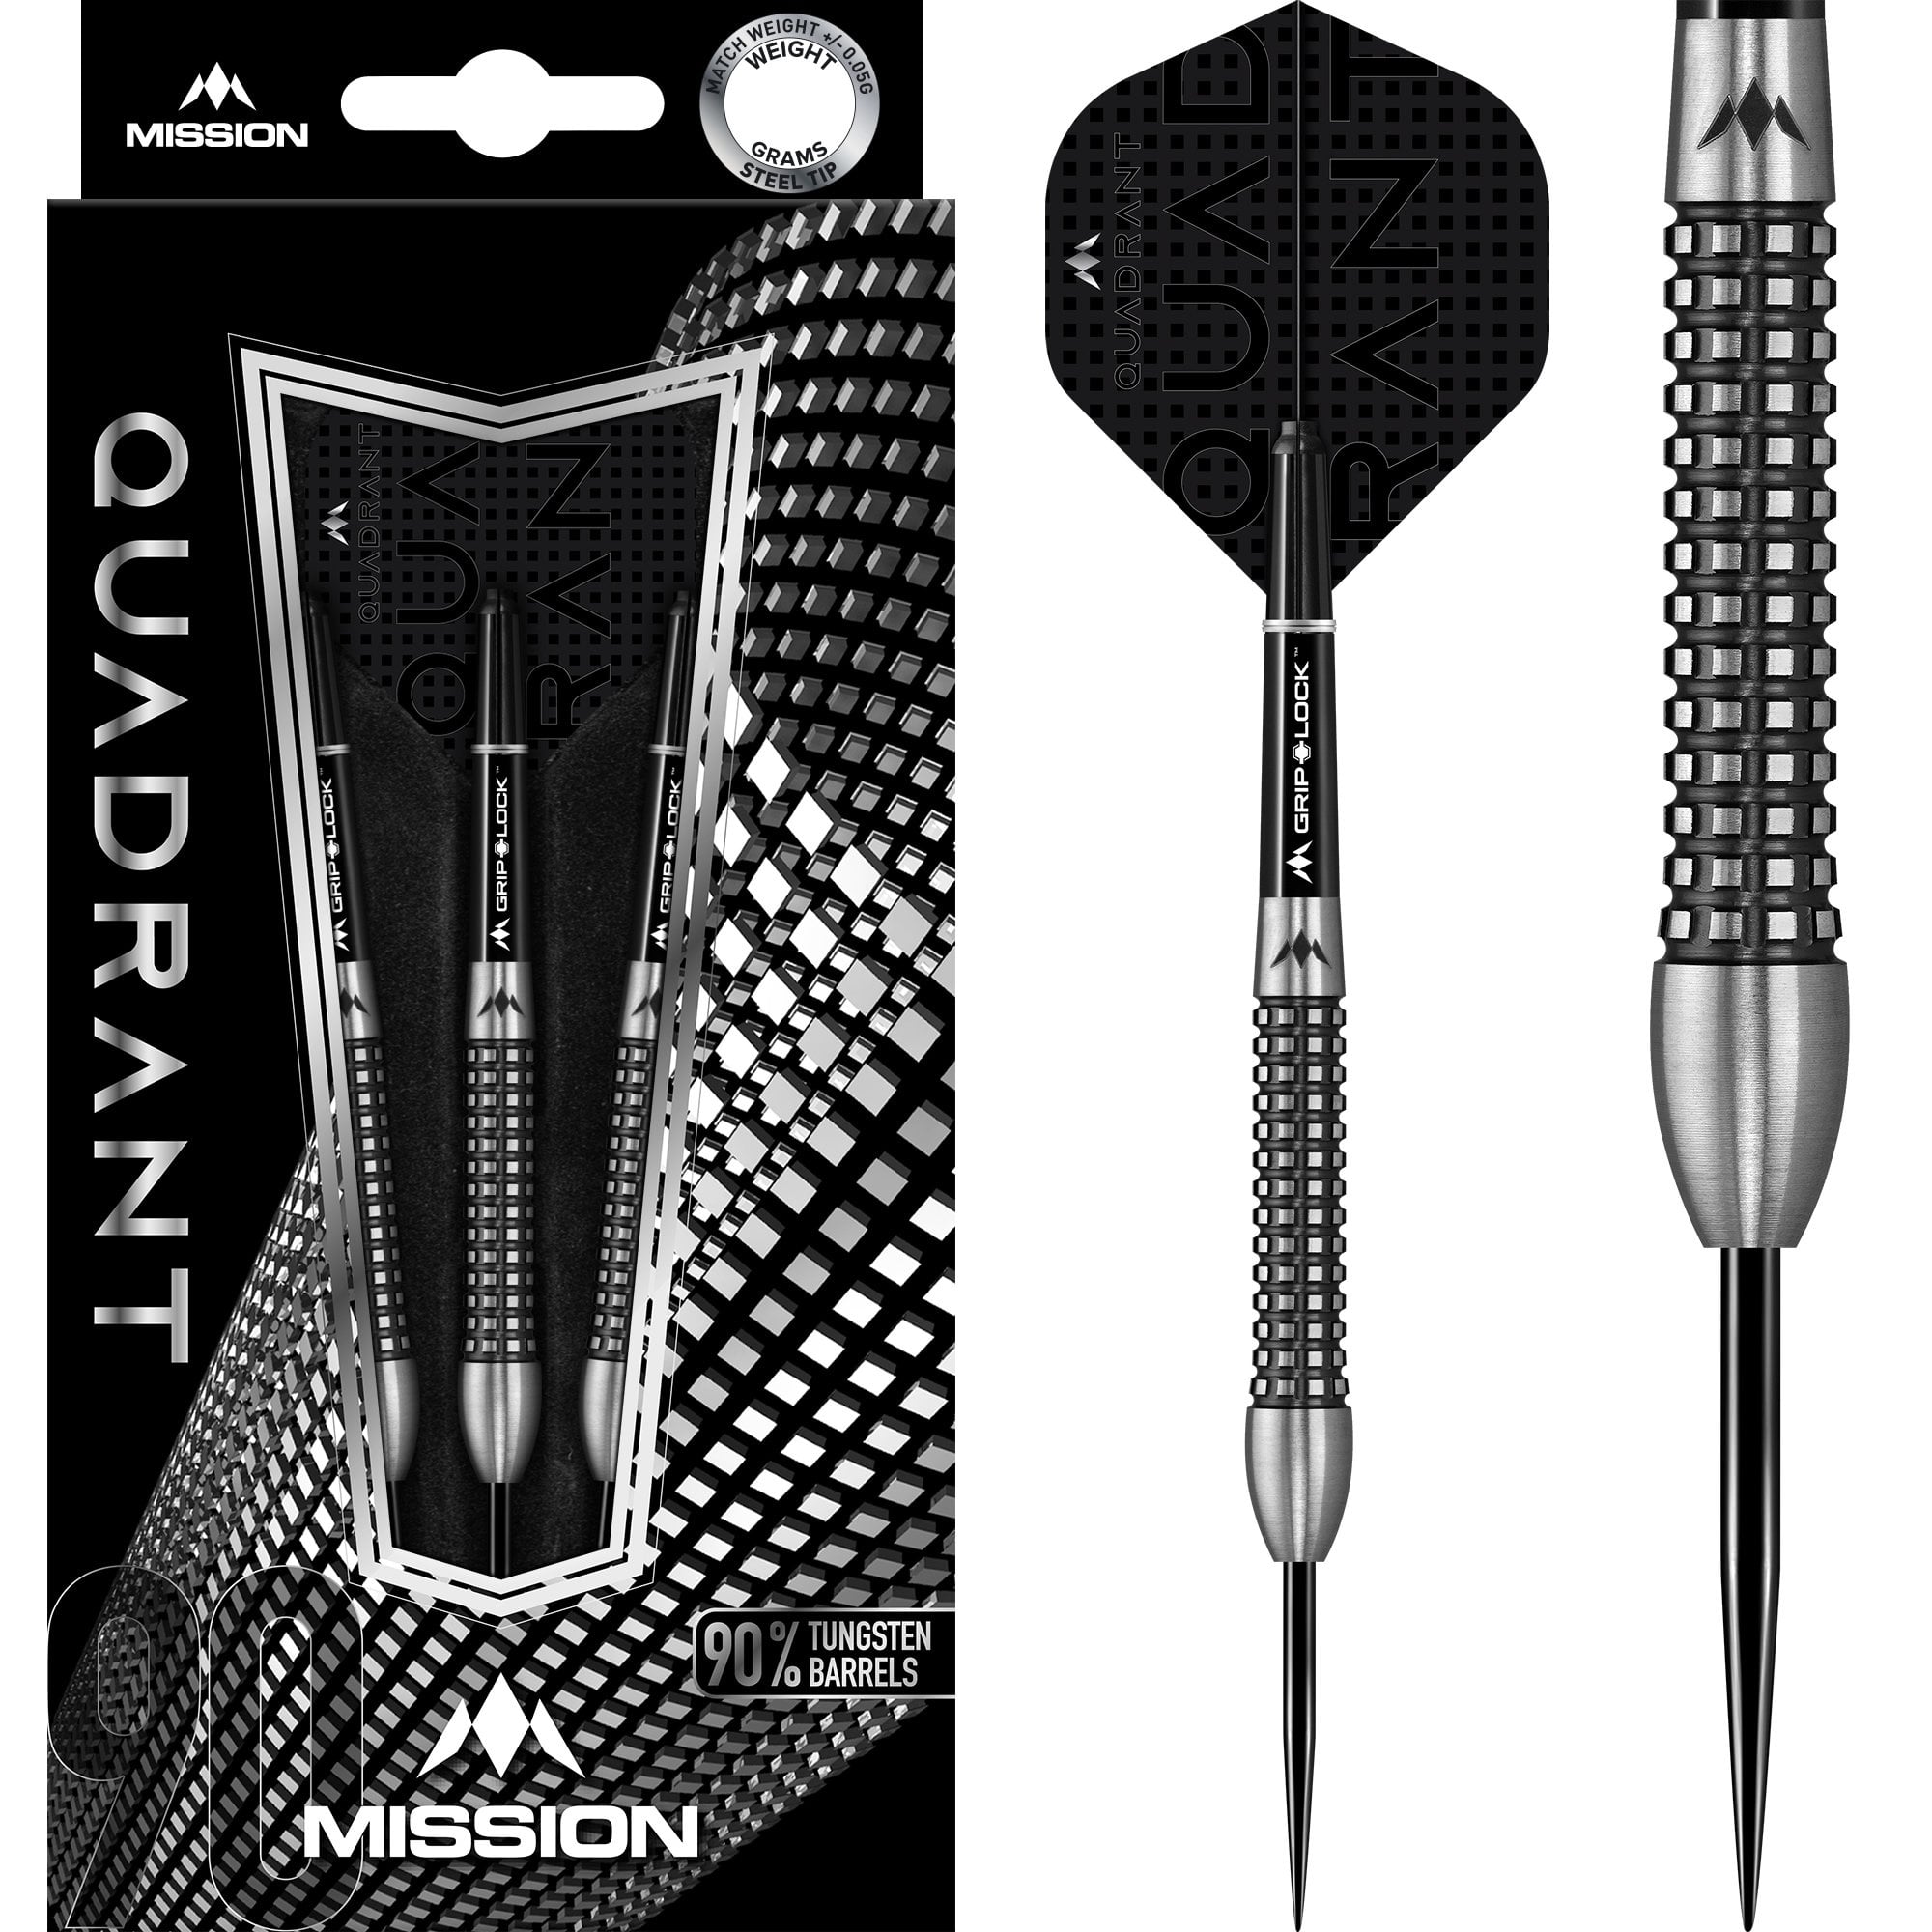 Mission Quadrant Darts - Steel Tip - M3 - Quad Grip